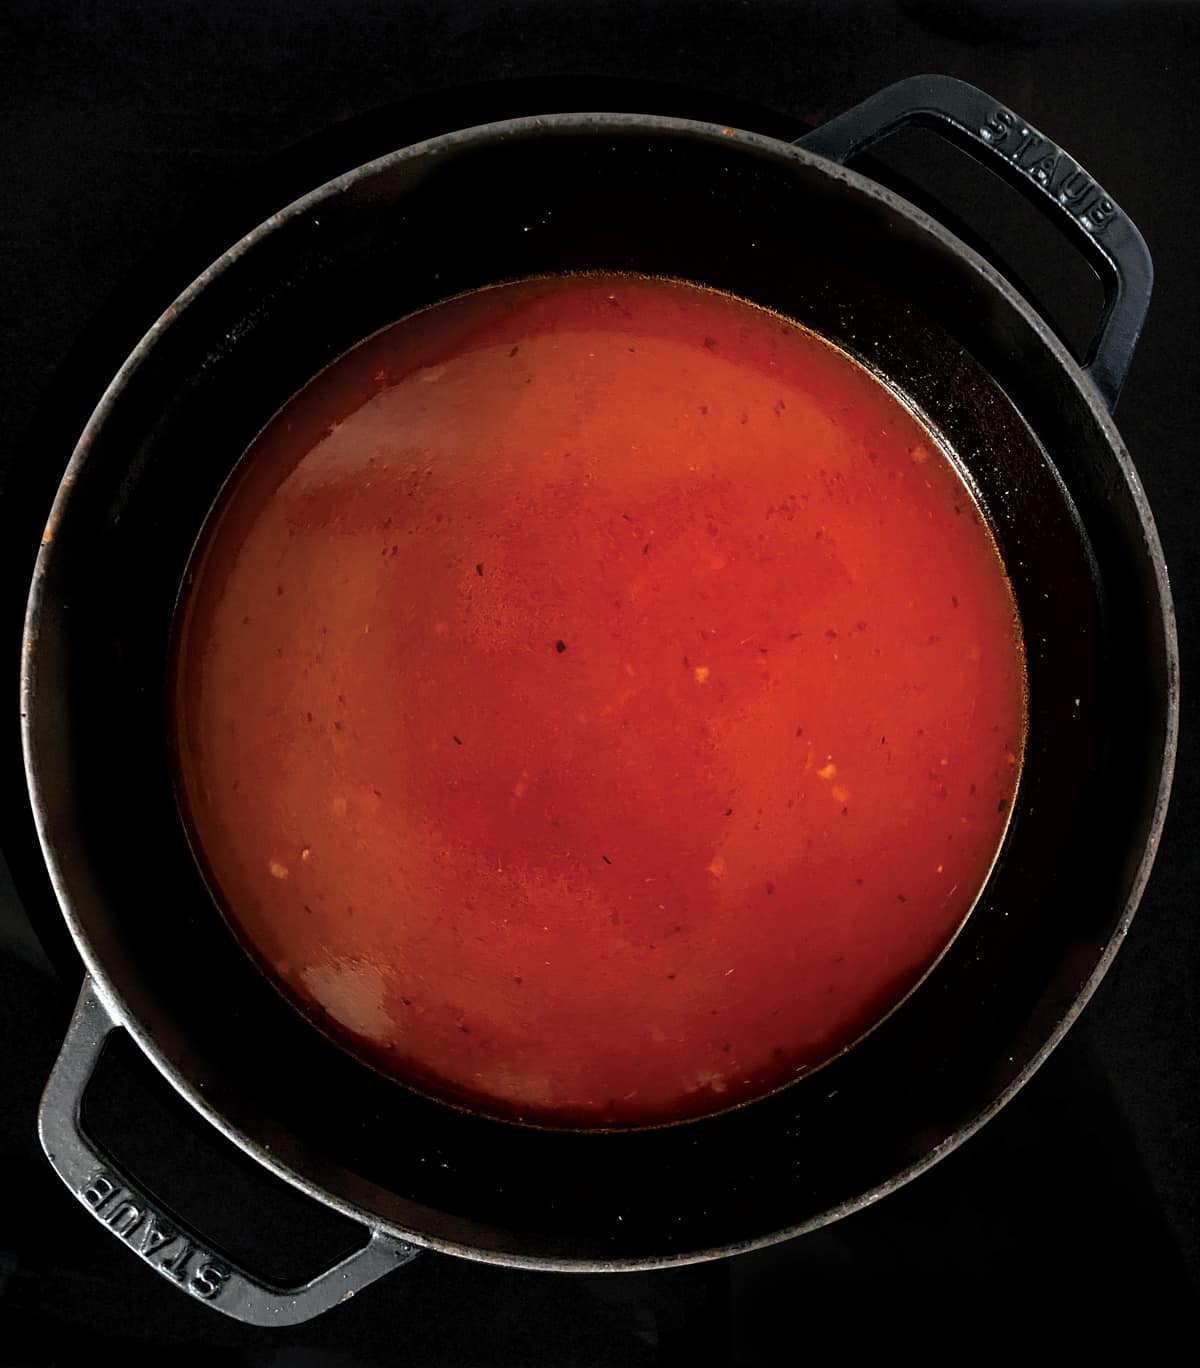 Tomato broth in a stockpot.